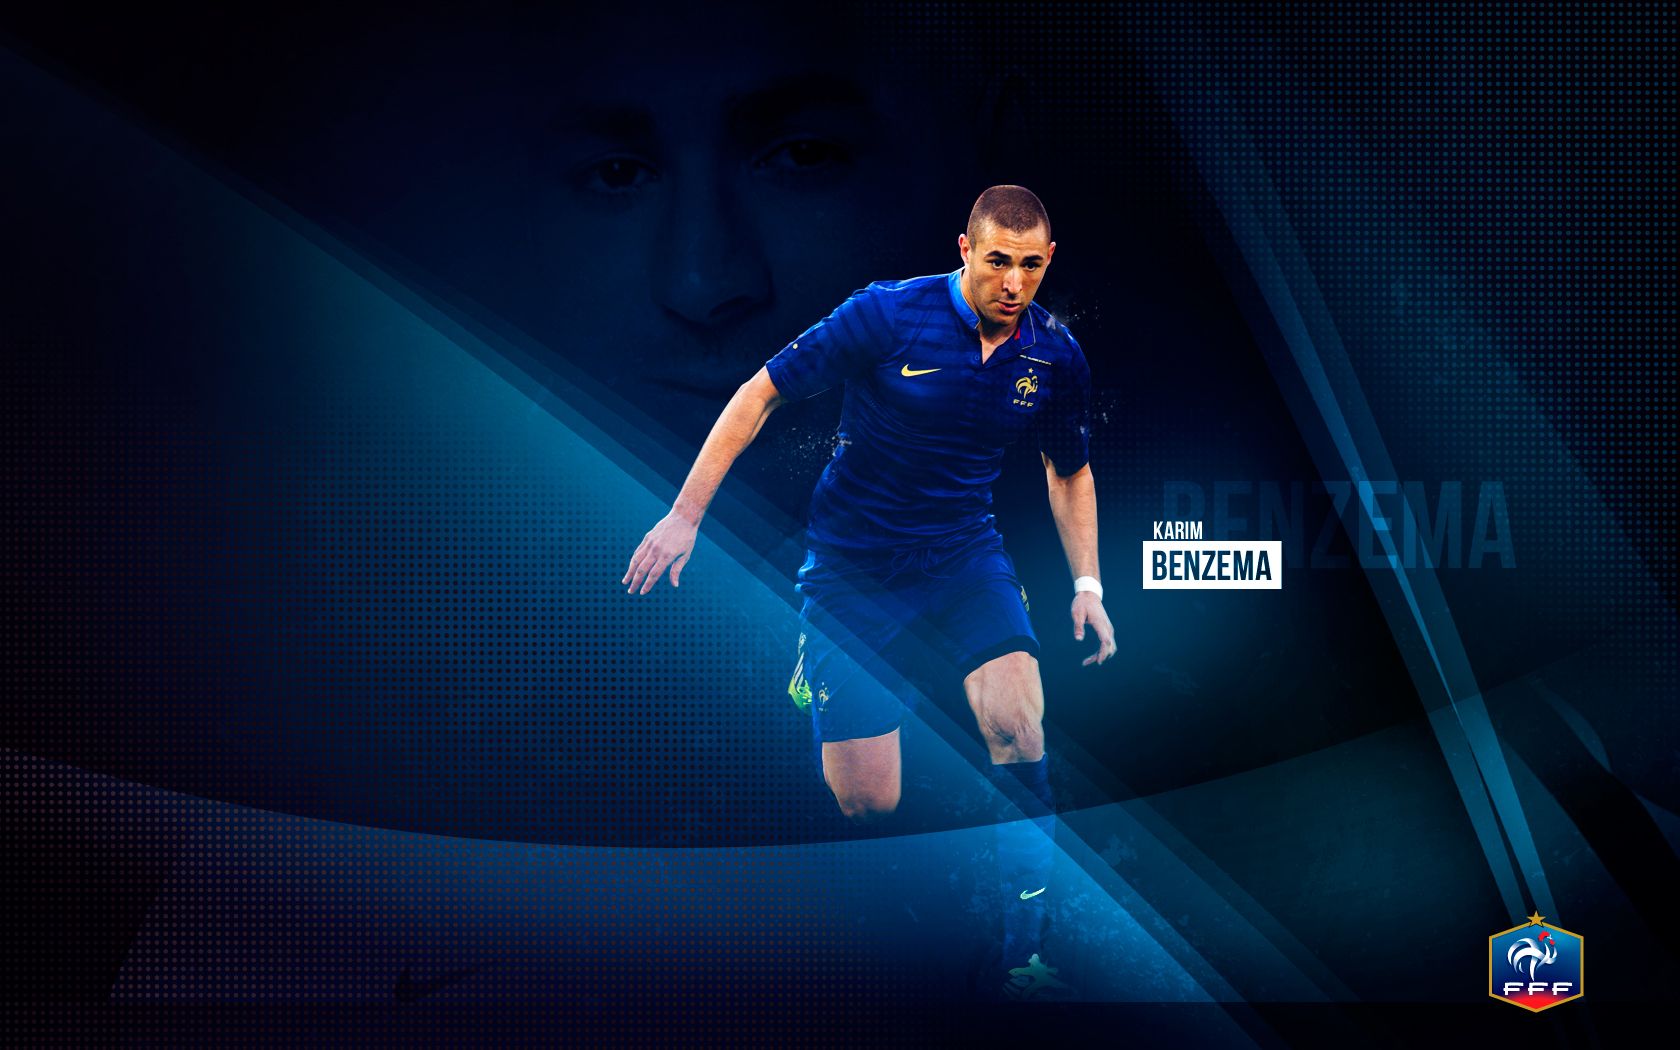 Karim Benzema Wide Wallpaper - Football HD Backgrounds